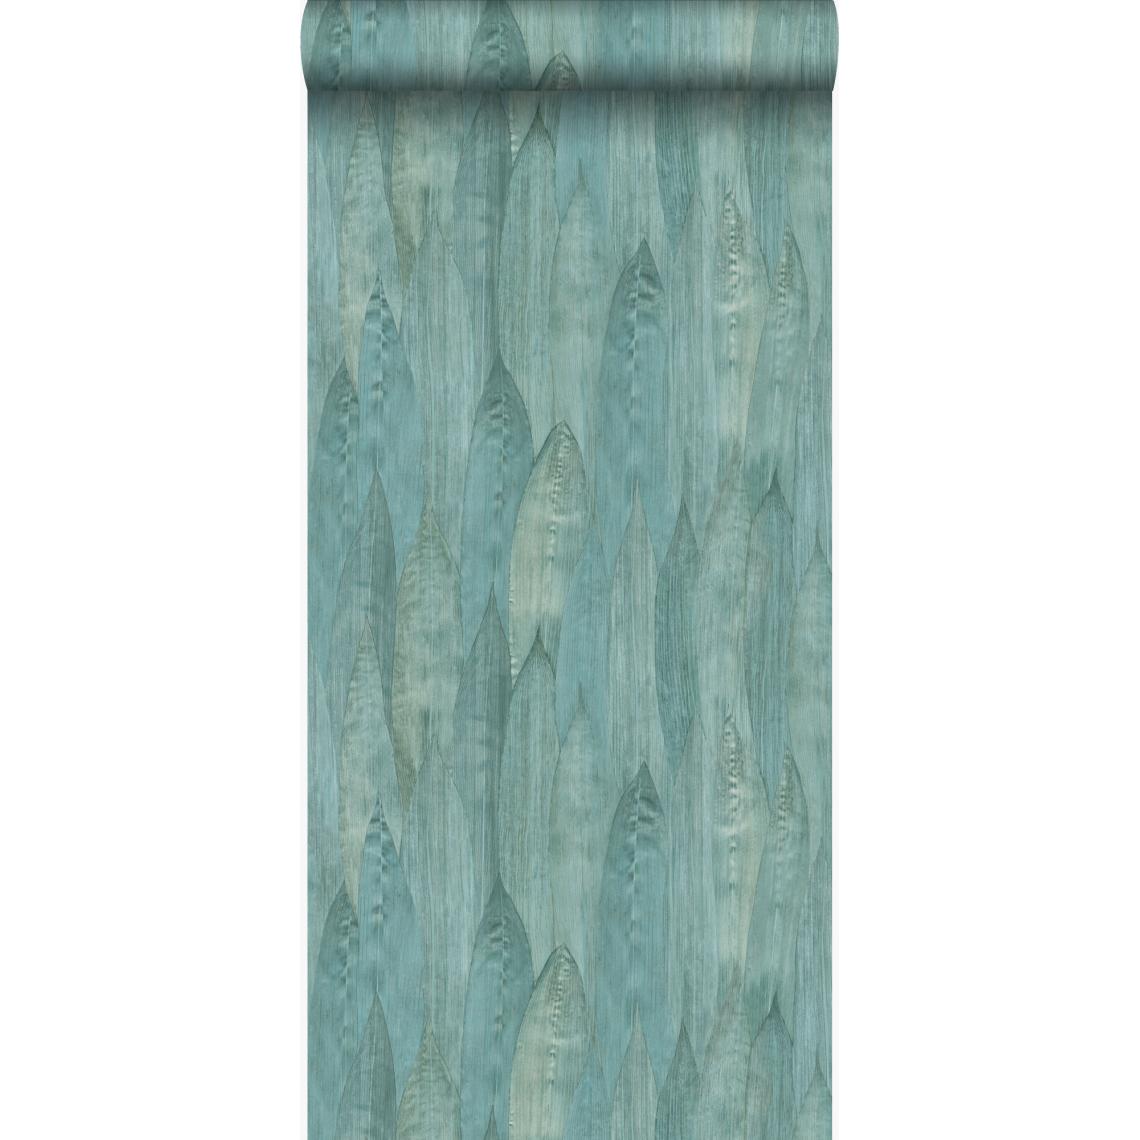 Origin - Origin PP intissé éco texture feuilles vert lagune - 347369 - 53 cm x 10,05 m - Papier peint